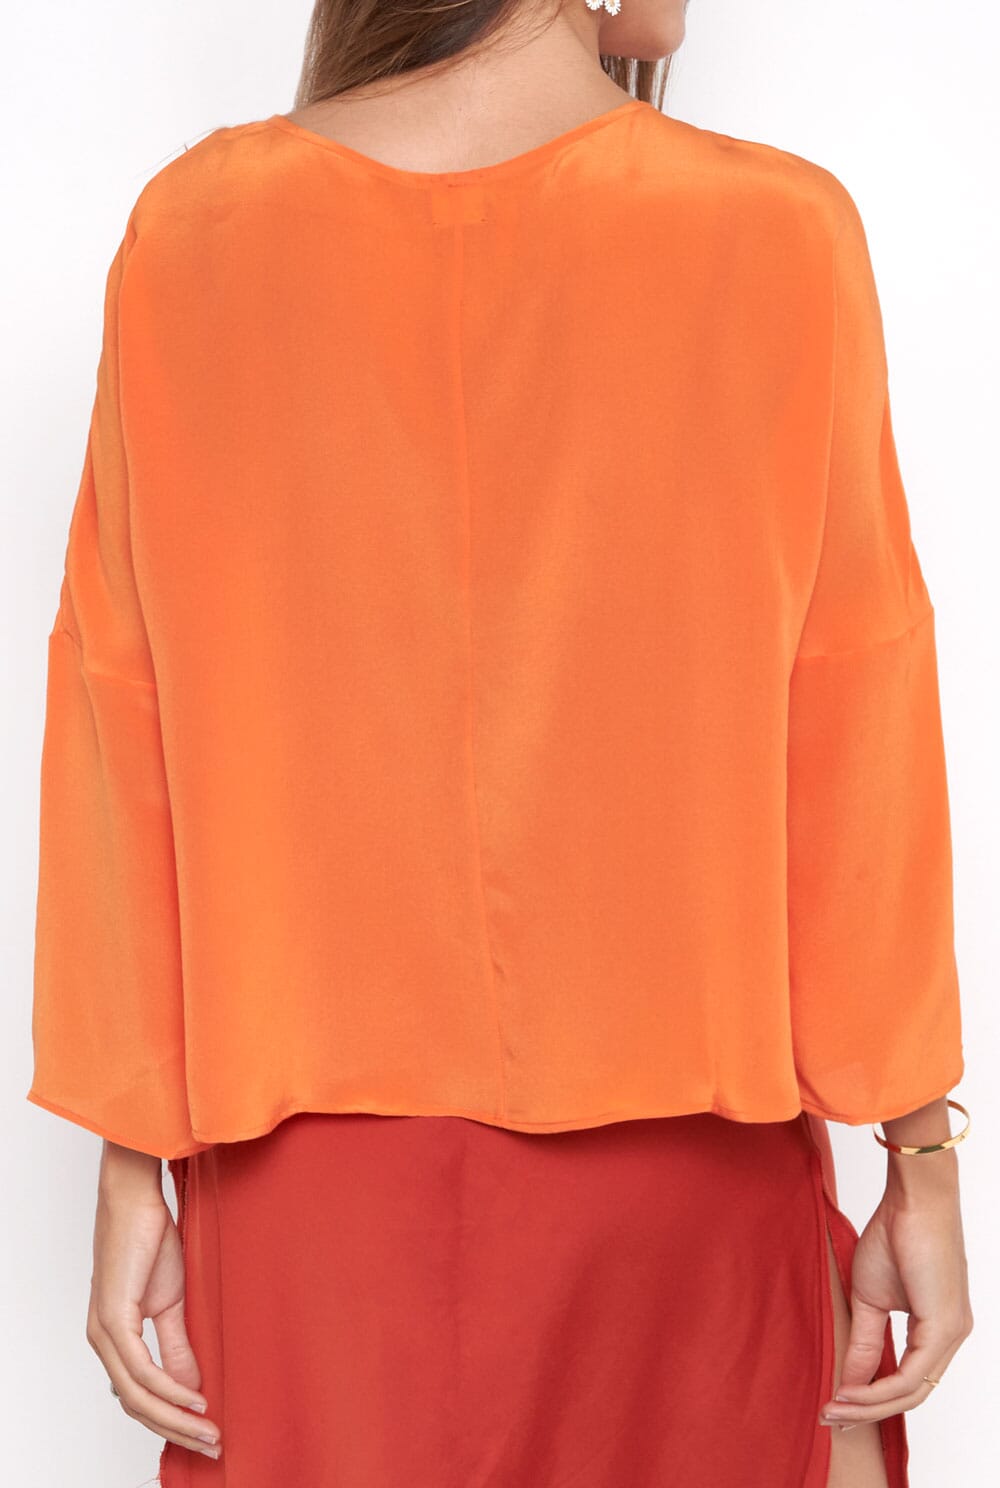 Lea orange Silk blouse Shirts & blouses Atelier Aletheia 